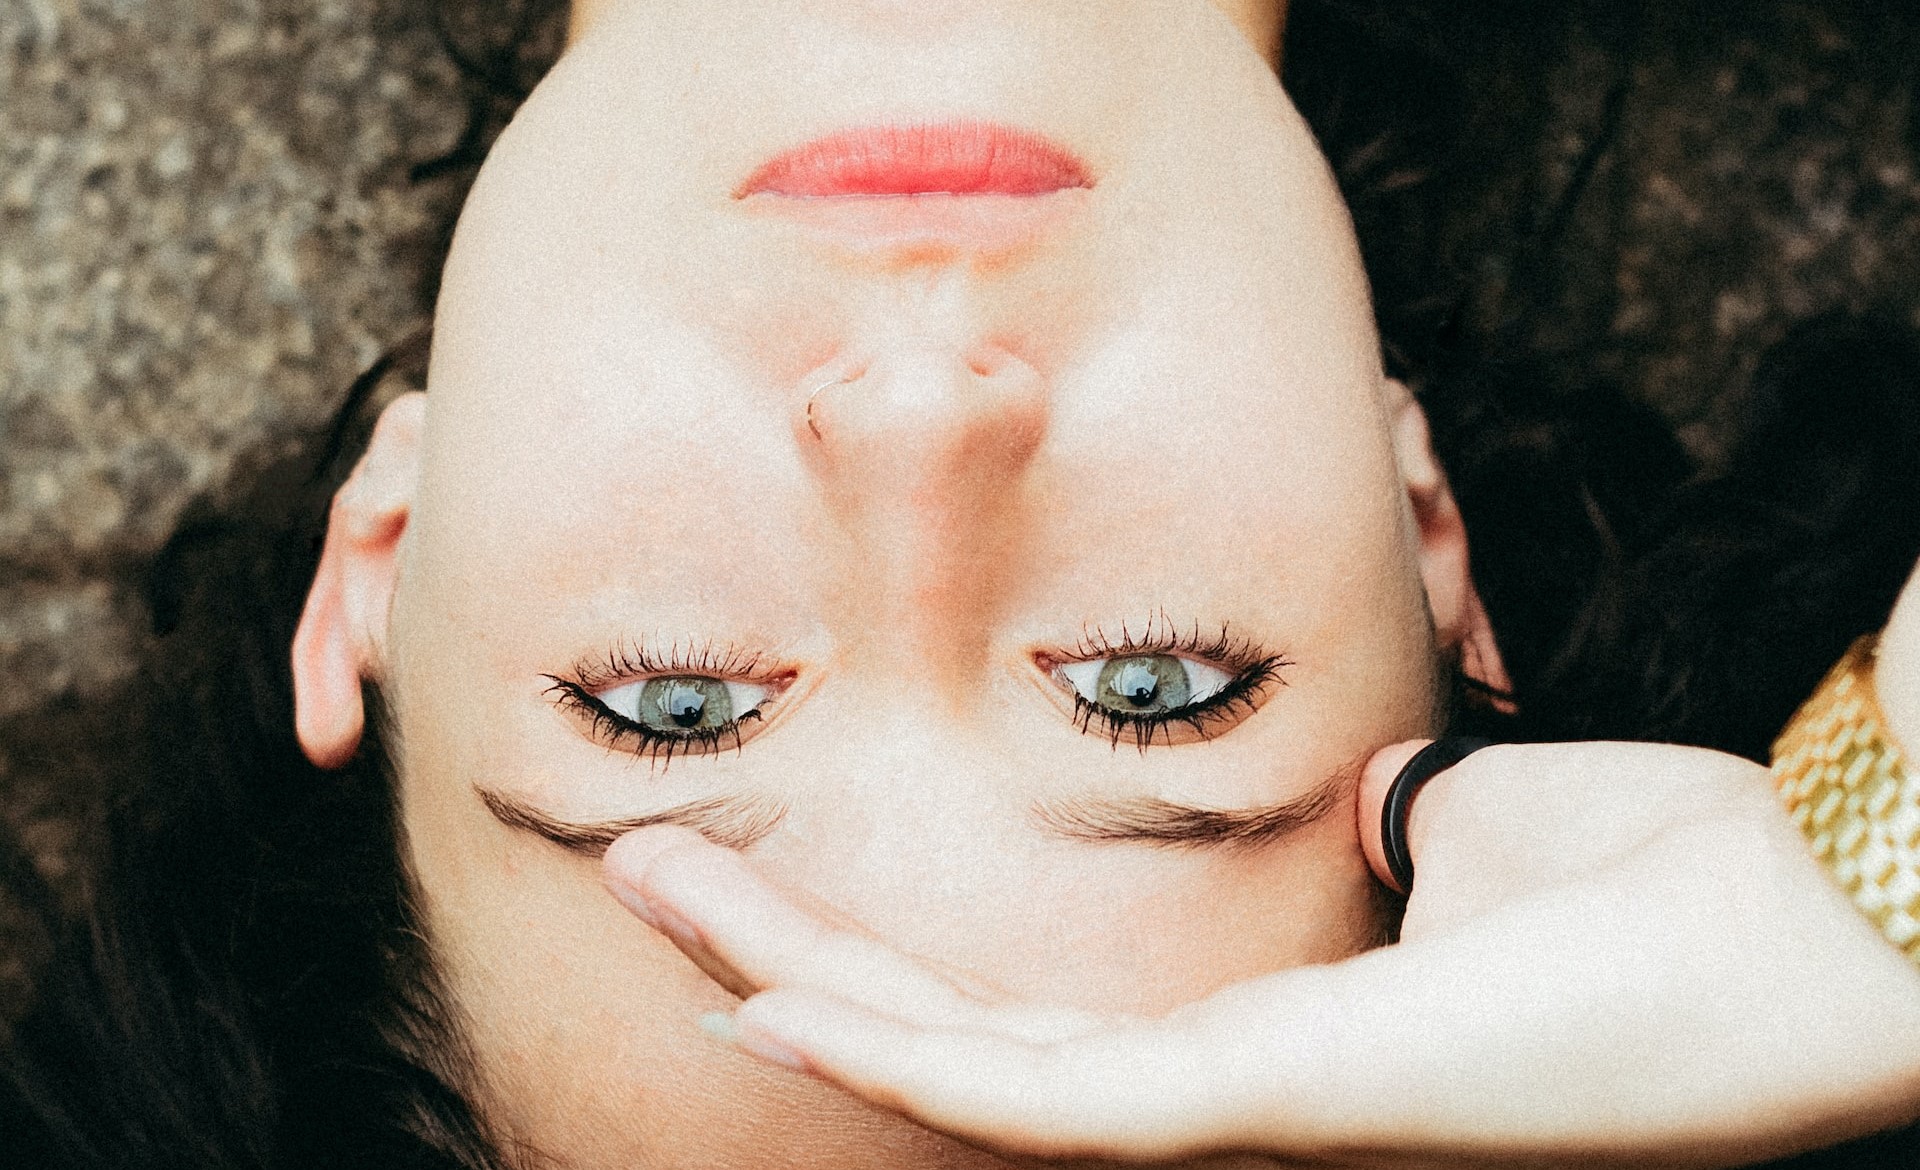 Faltenbehandlung auf der Stirn – warum ist Botox die optimale Methode?